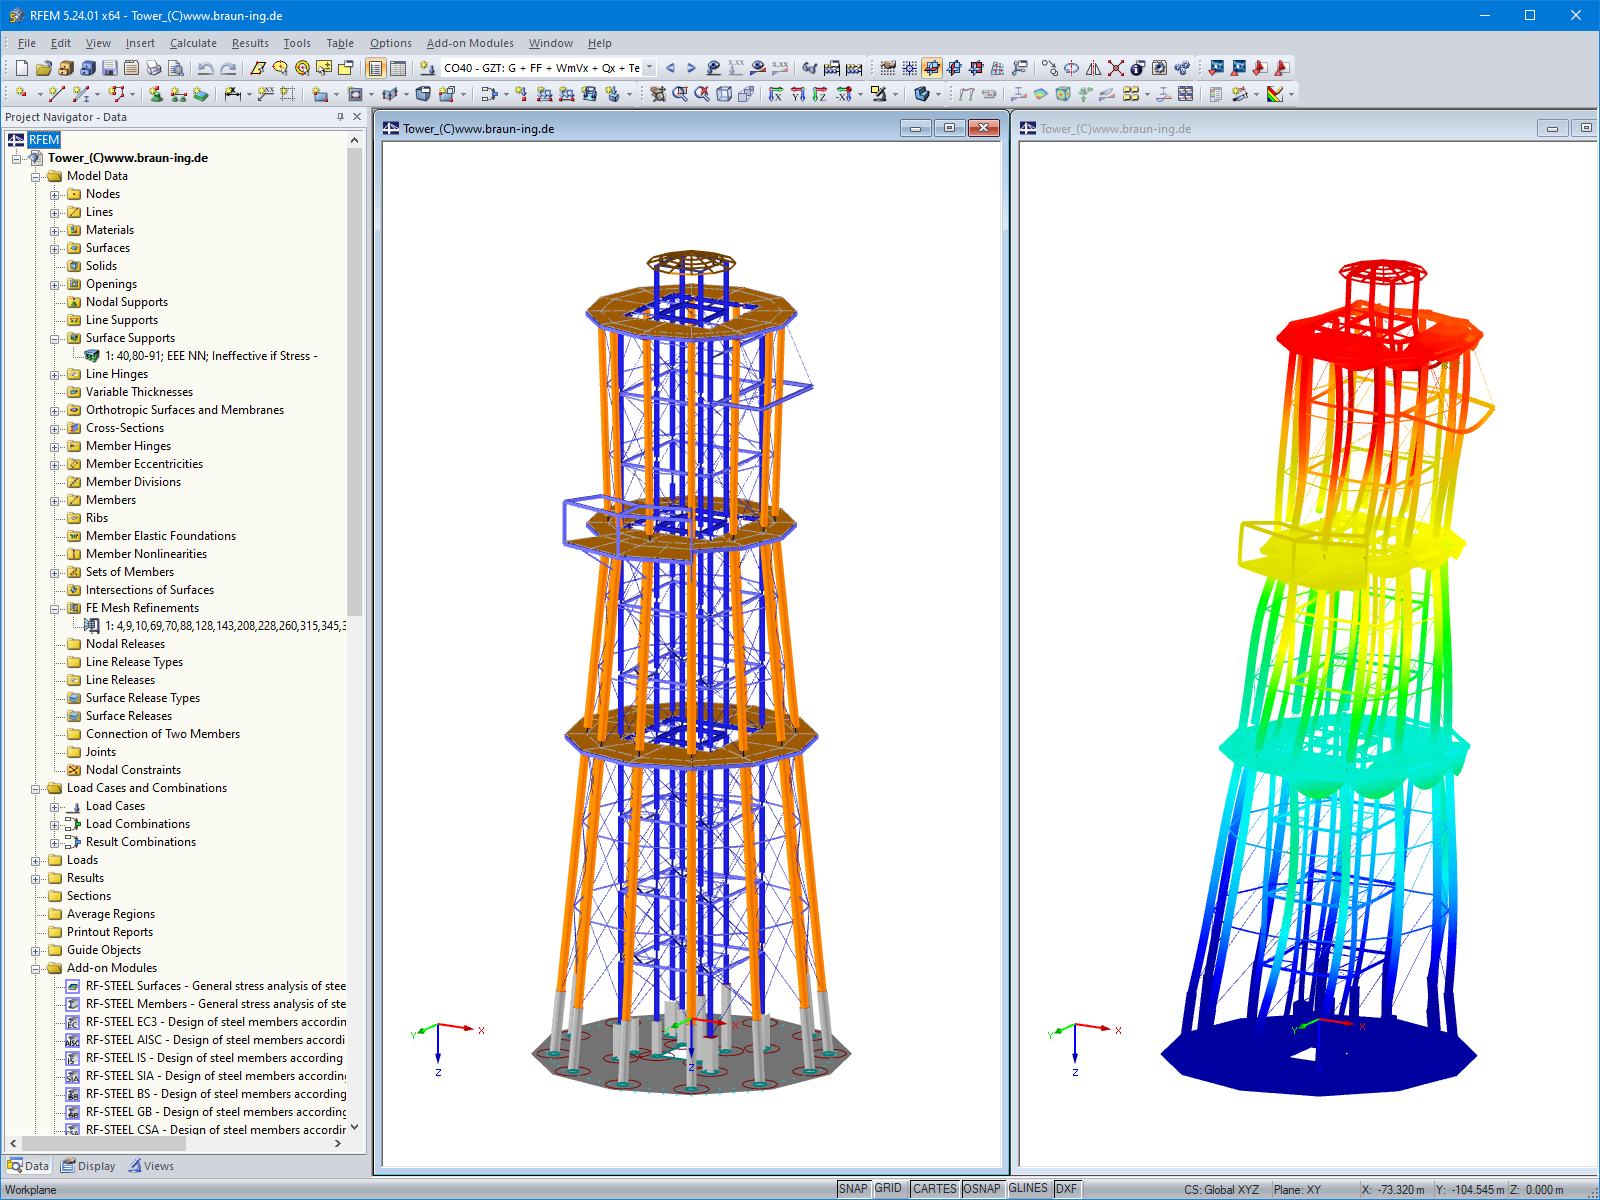 Модель смотровой башни (слева) и отображение деформаций (справа) в программе RFEM (© Ingenieurbüro Braun GmbH & Co. KG)